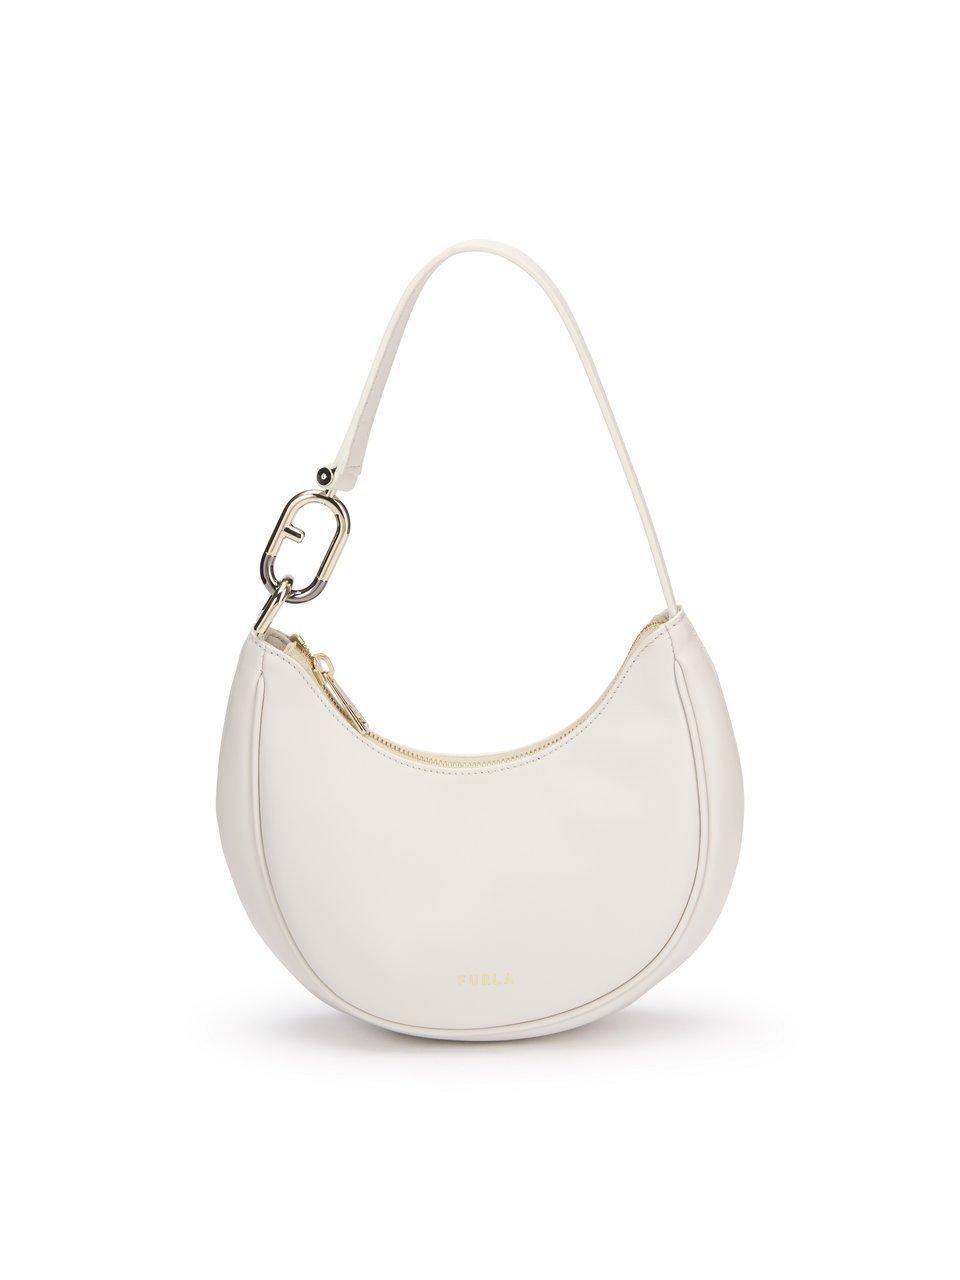 Image of Handbag “Primavera“ Furla white